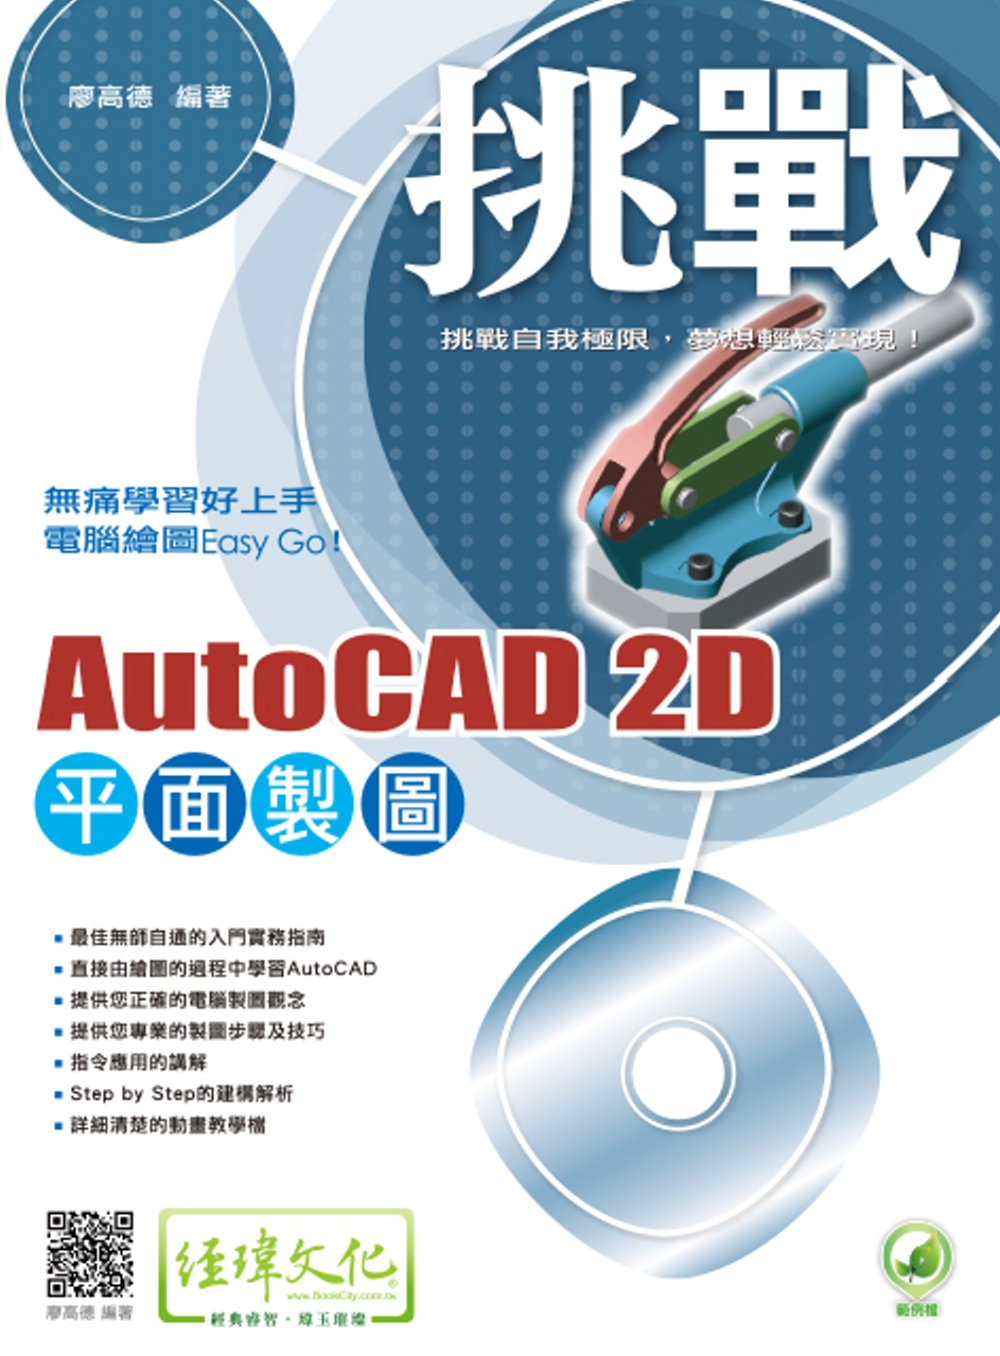 挑戰 AutoCAD 2D 平面...